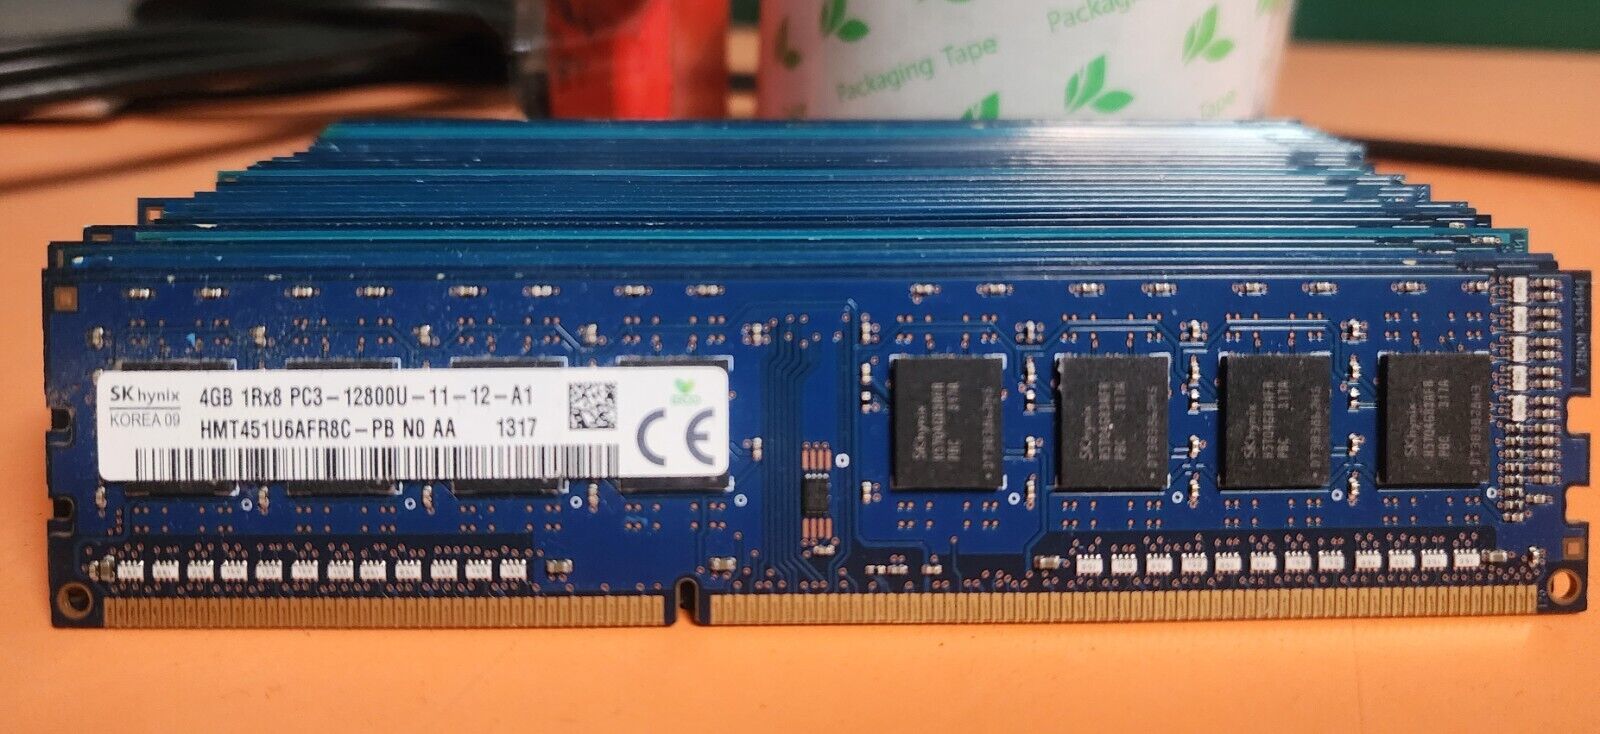 Lot of 25 SK Hynix 4GB 1Rx8 PC3-12800U DDR3 1600 MHz Desktop RAM HMT451U6AFR8C